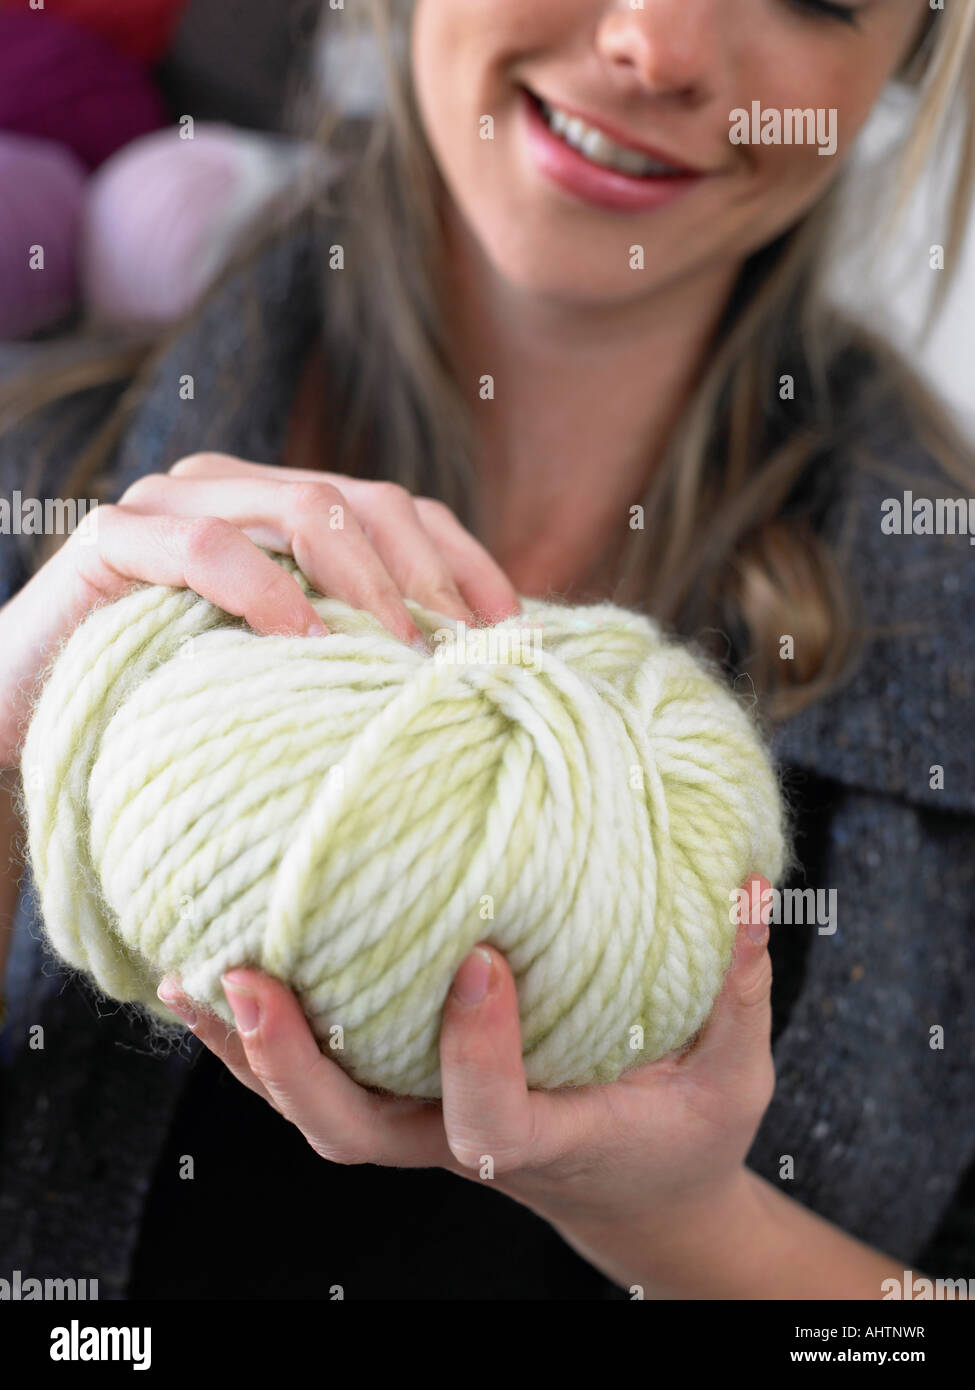 Young woman holding balle de laine, smiling, close-up Banque D'Images